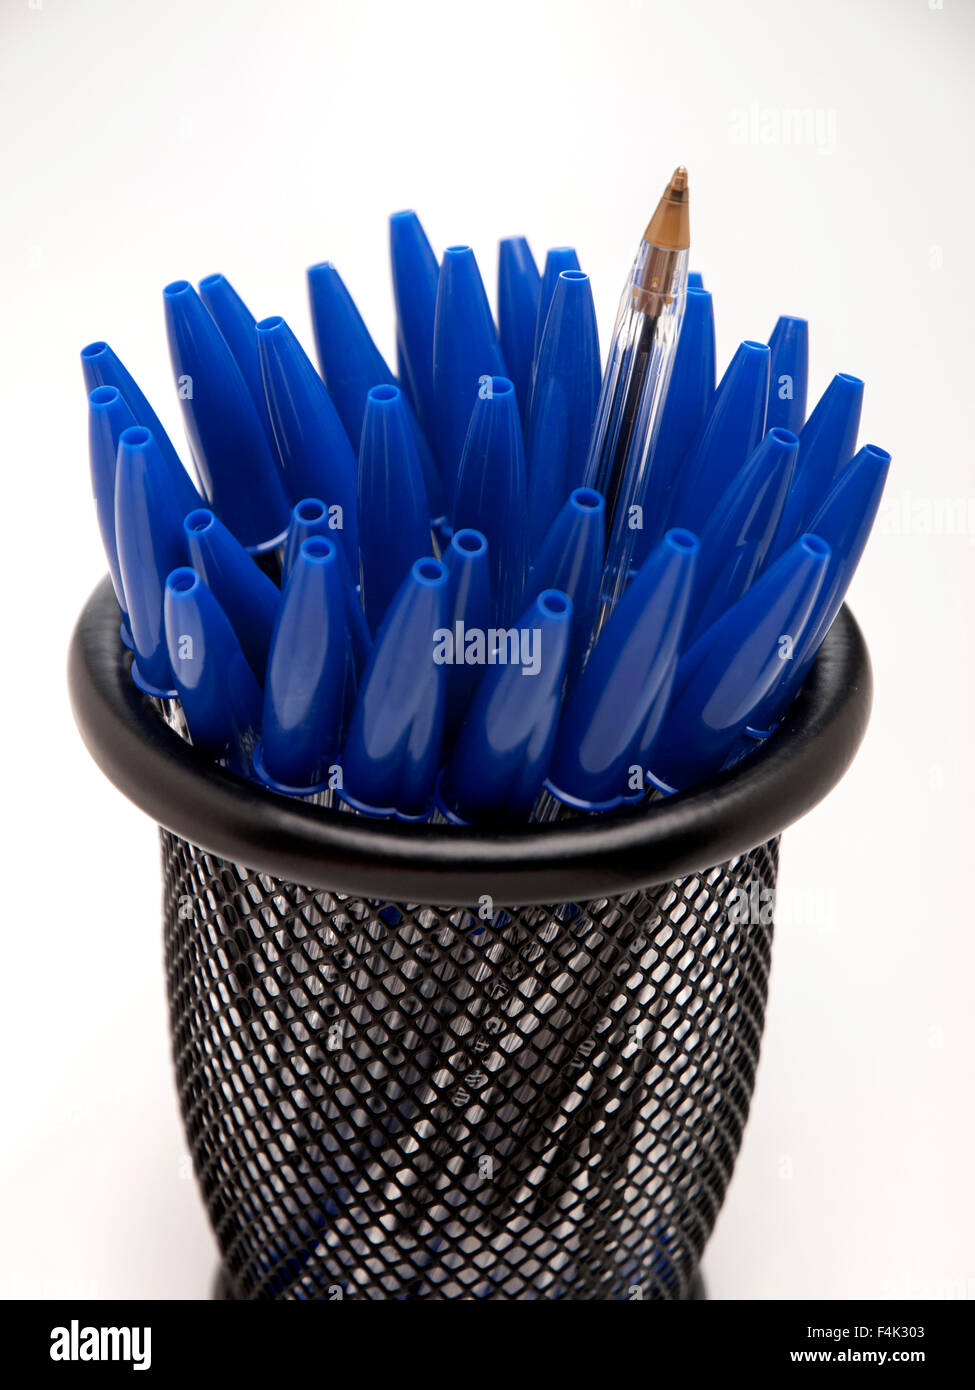 Bic cristal bleu plumes en noir étui à crayons Banque D'Images